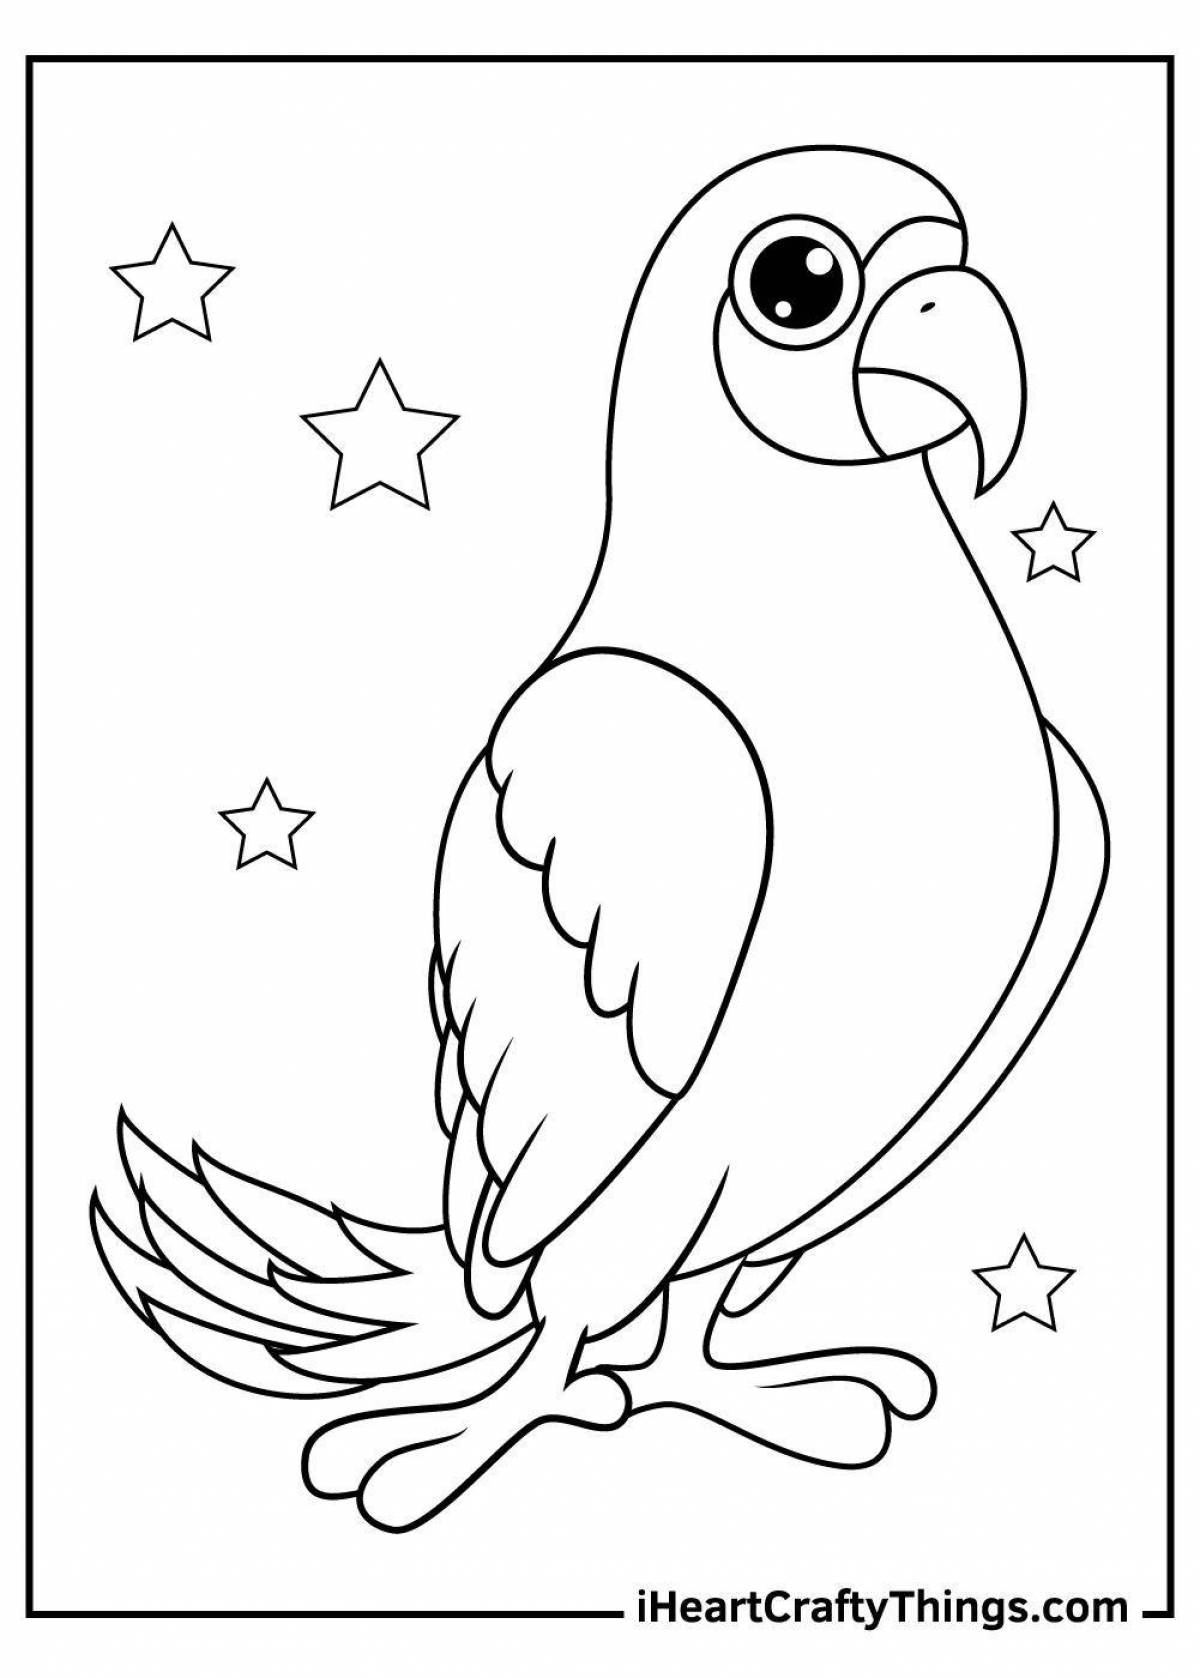 Раскраска веселый попугай для детей 6-7 лет